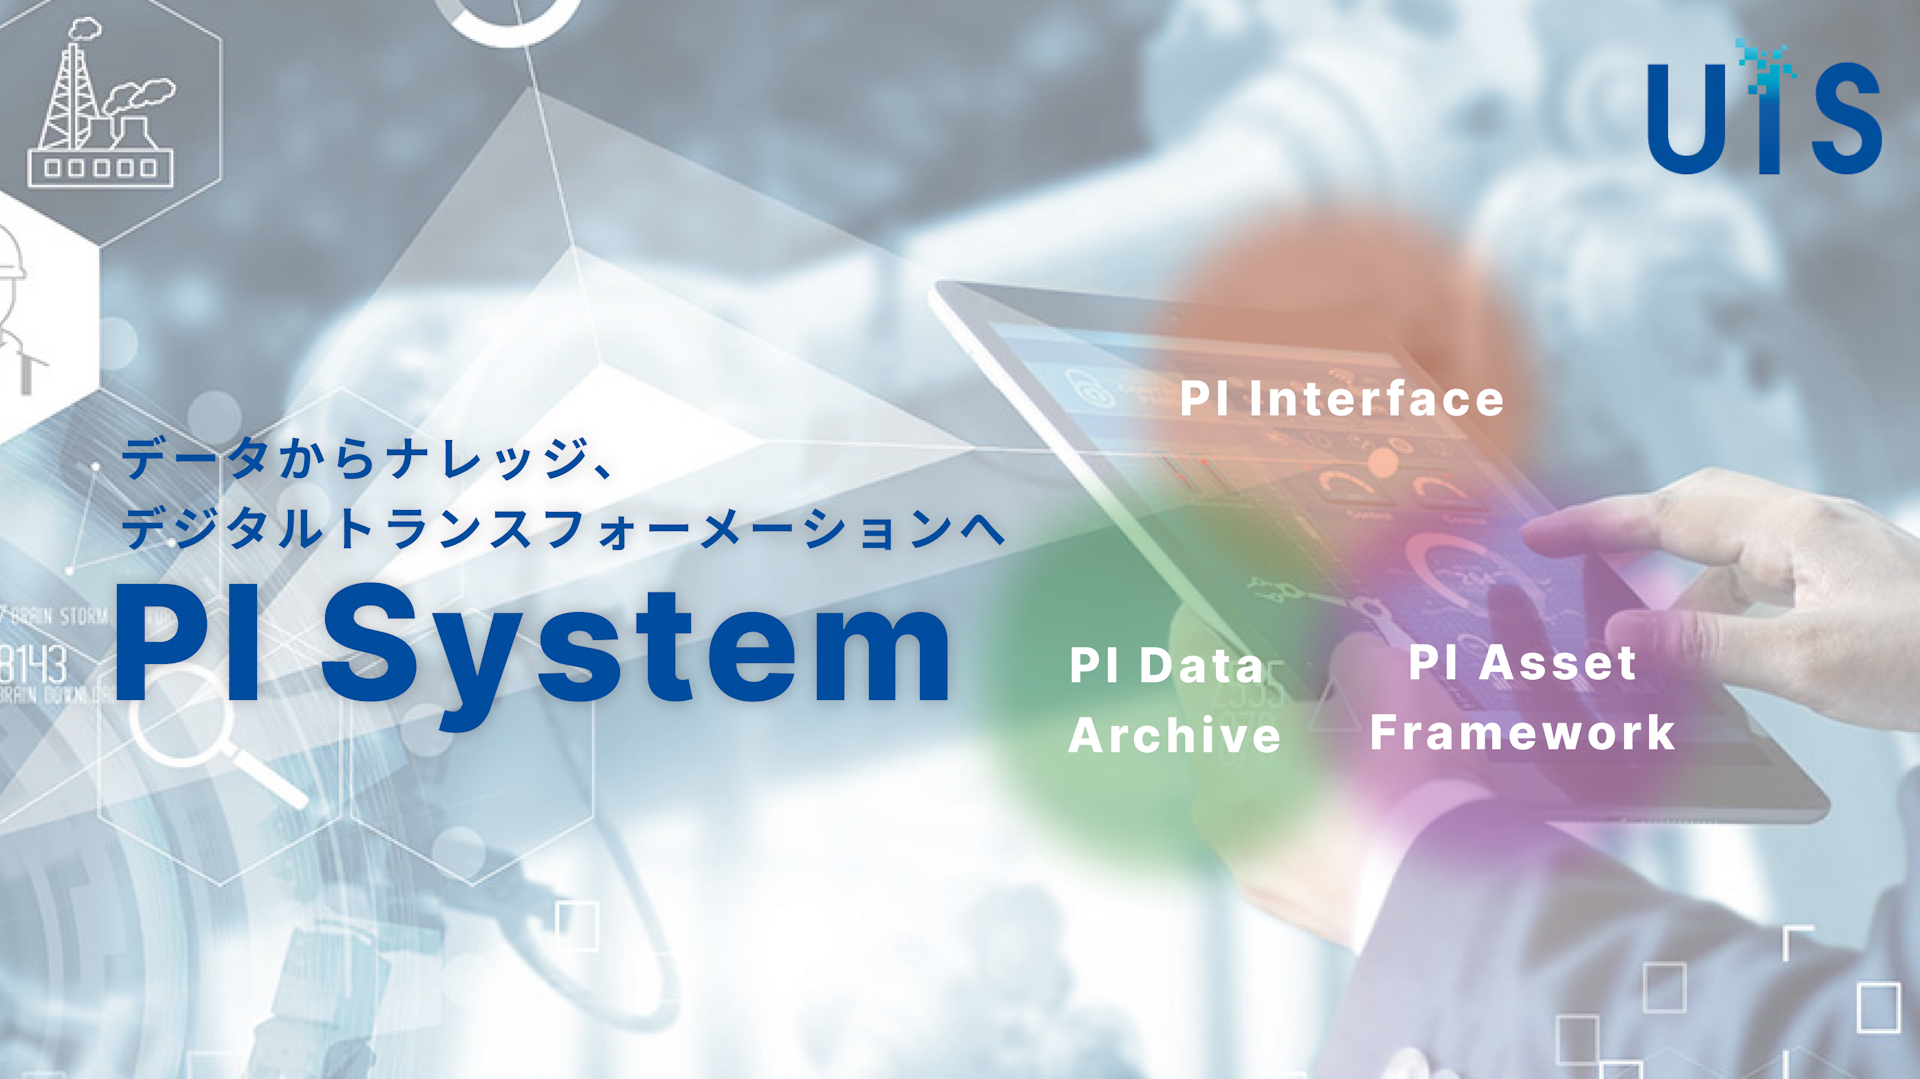 PI system リアルタイムデータインフラ